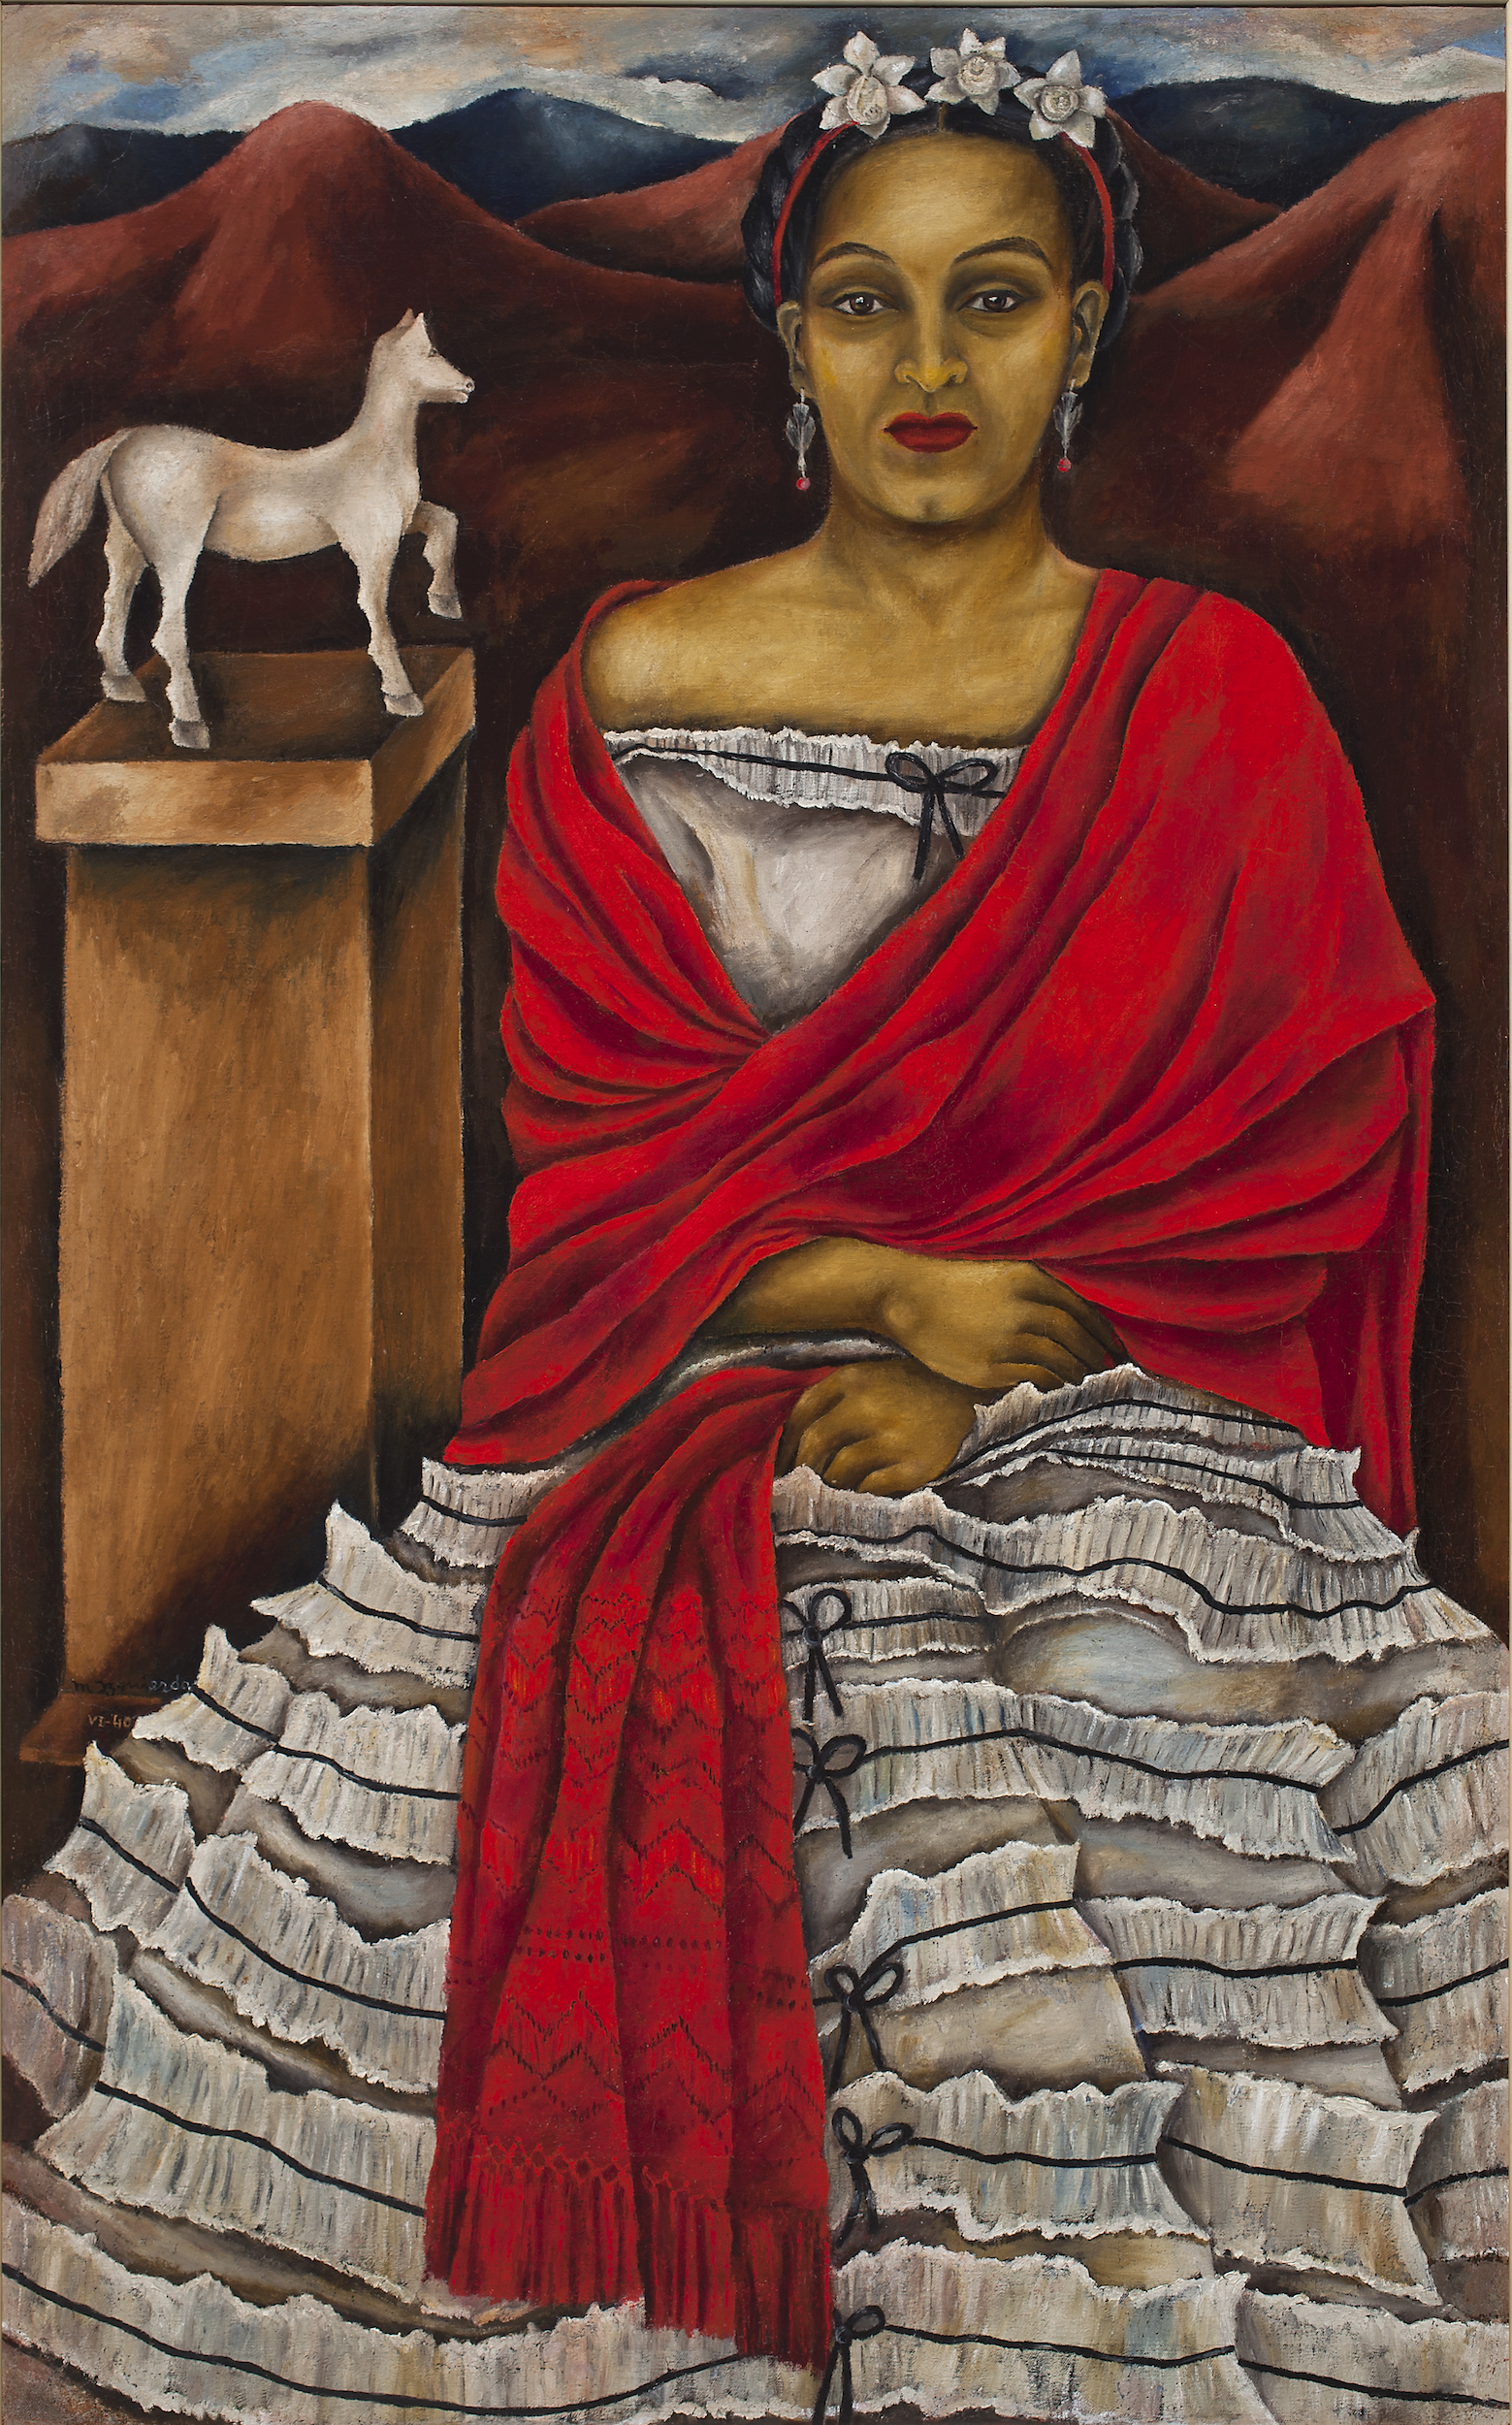 بورتريه ذاتية بوشاح أحمر by María Izquierdo - 1940 م 